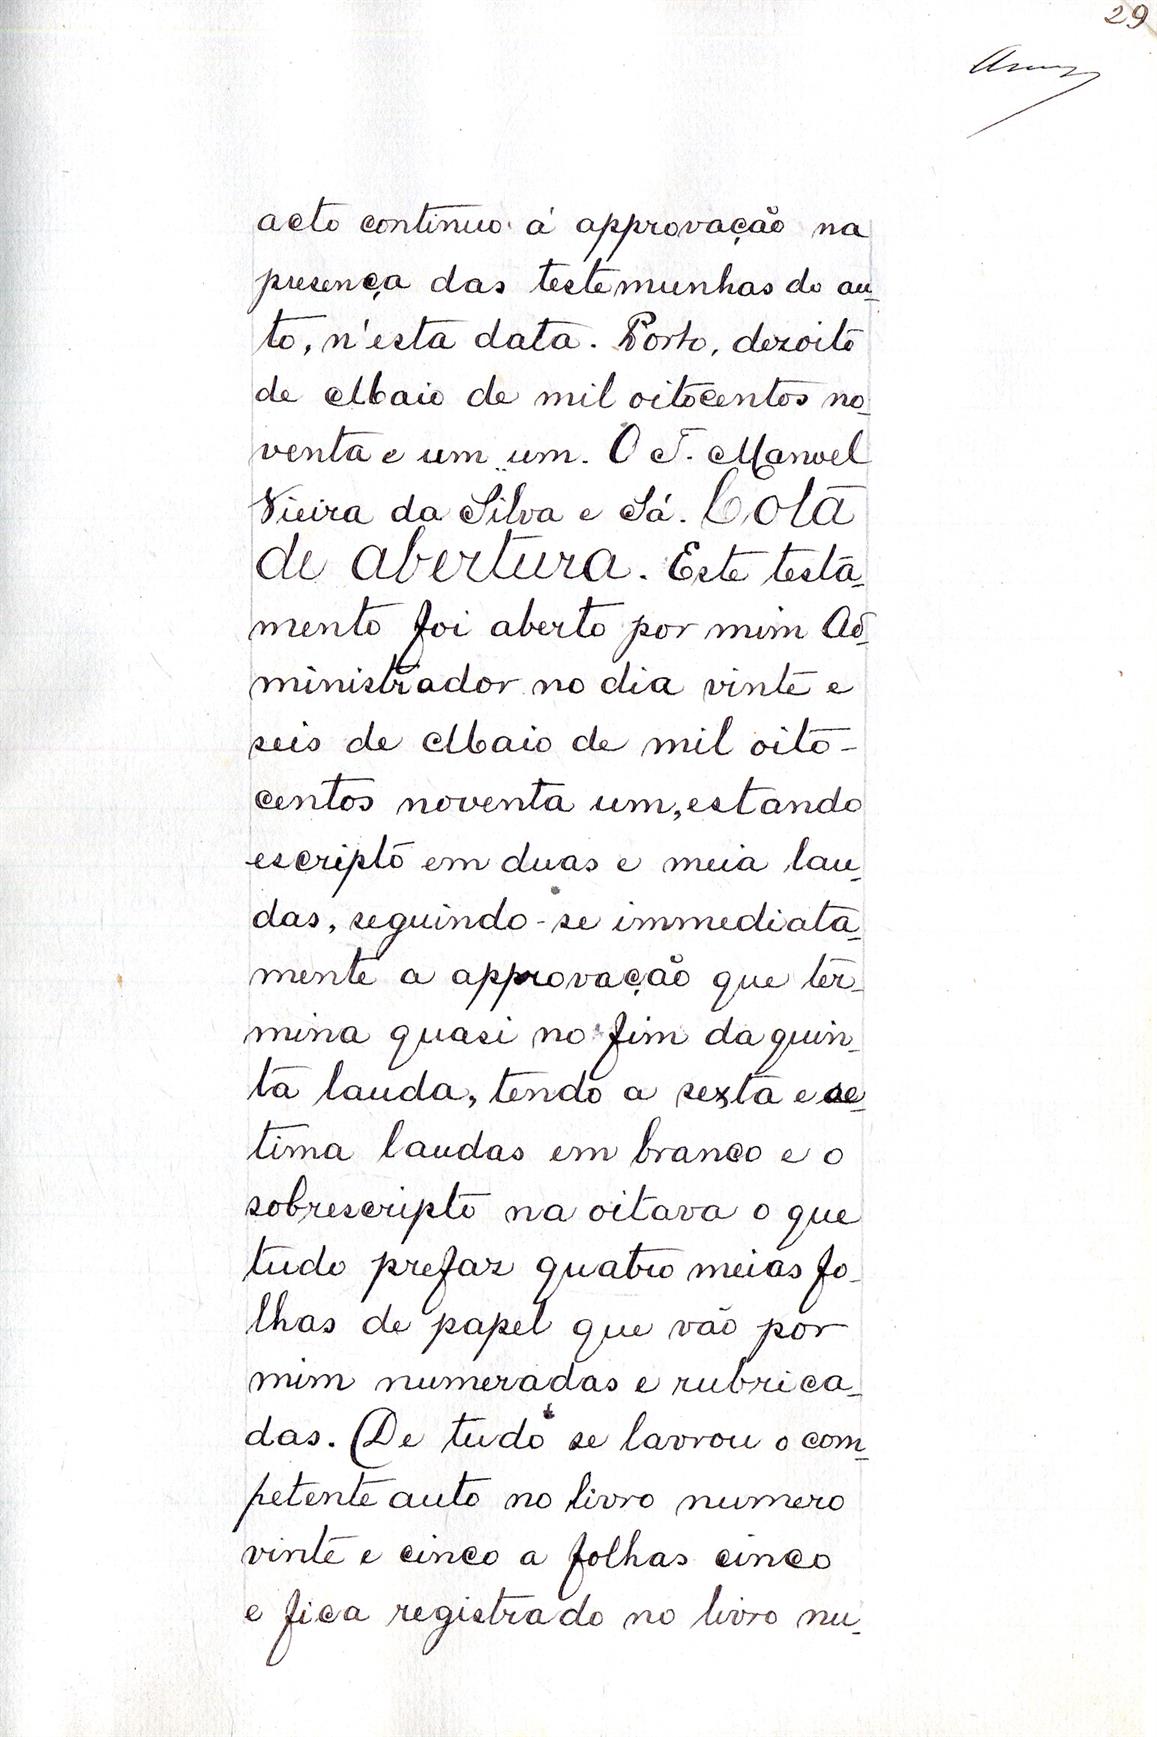 Registo do testamento com que faleceu Adriano de Abreu Cardoso Machado, Conselheiro, Procurador Geral da Coroa e Fazenda